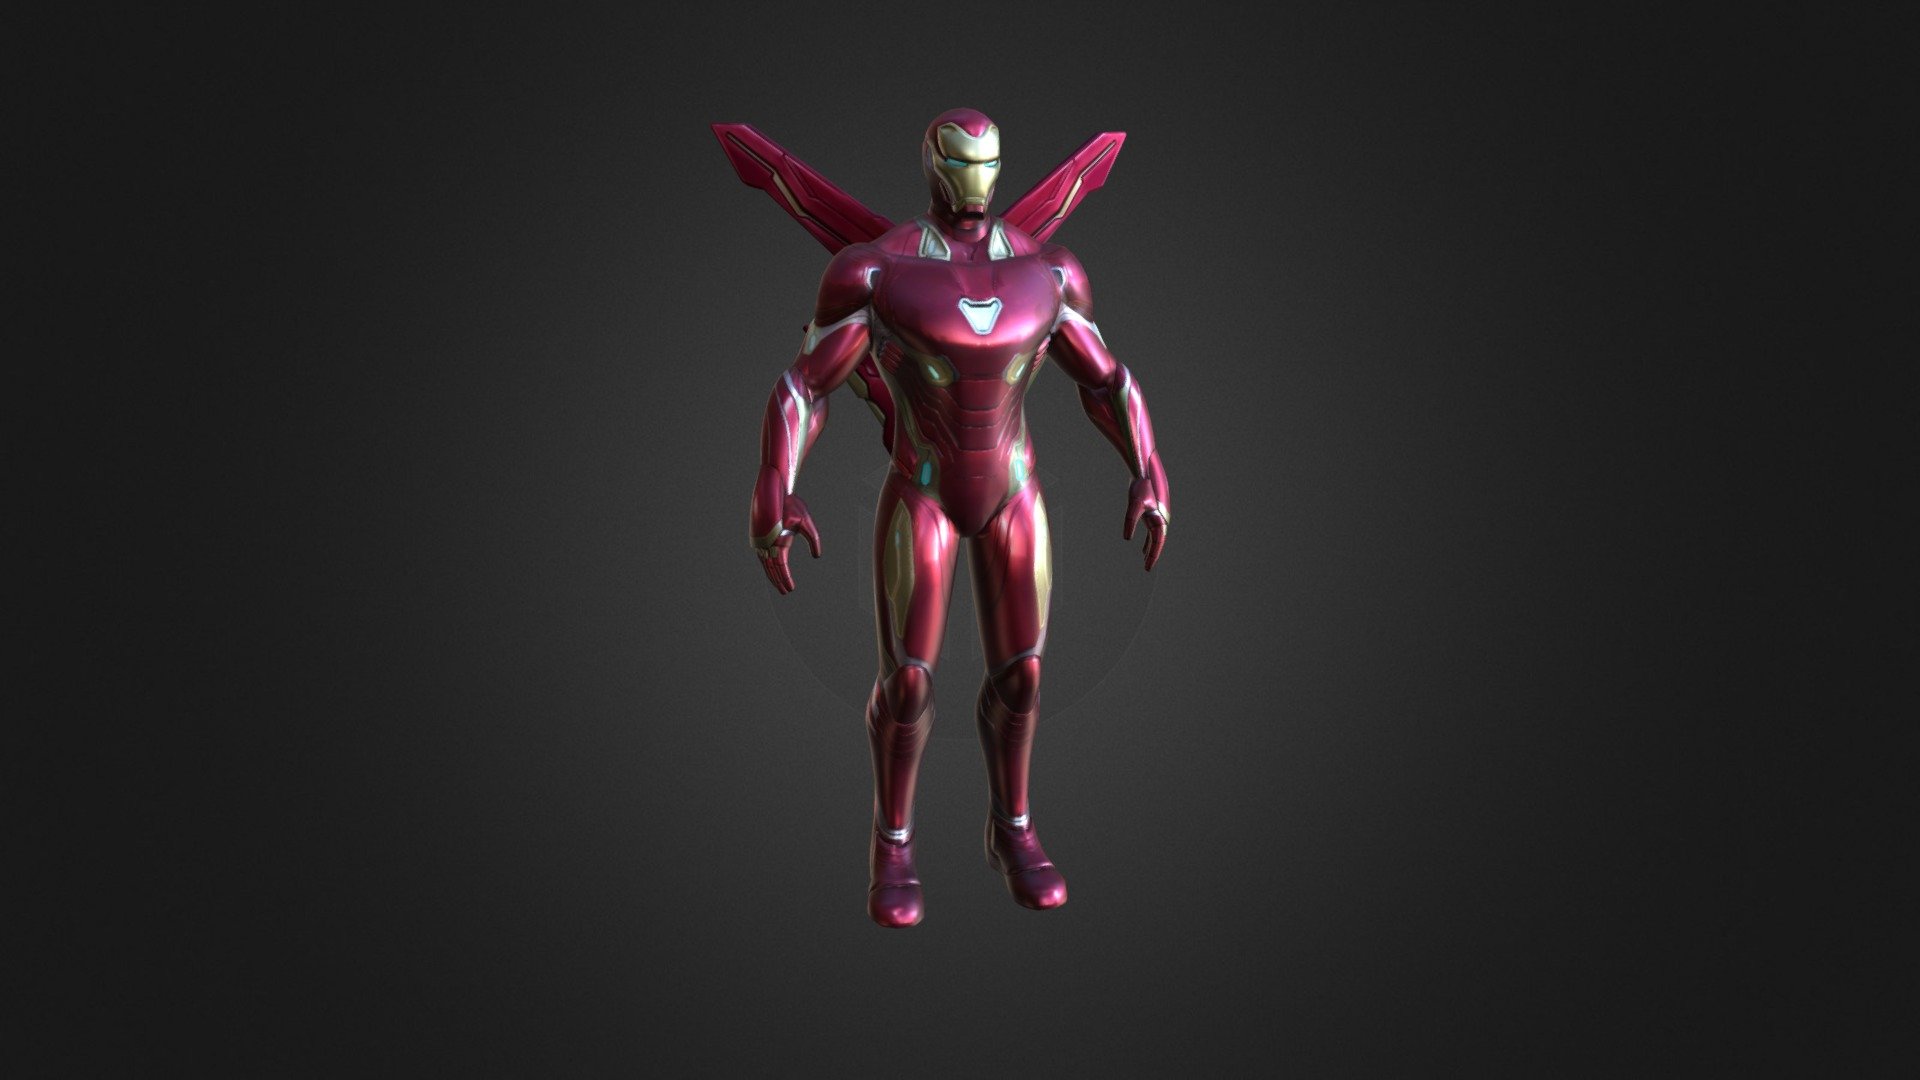 ironman is your favourite character of marvel
Avengers 
toy stark 
endgame
marvel 
super hero
ironman 
marvel model robot - Ironman Marvel - 3D model by shouryahaldkar 3d model